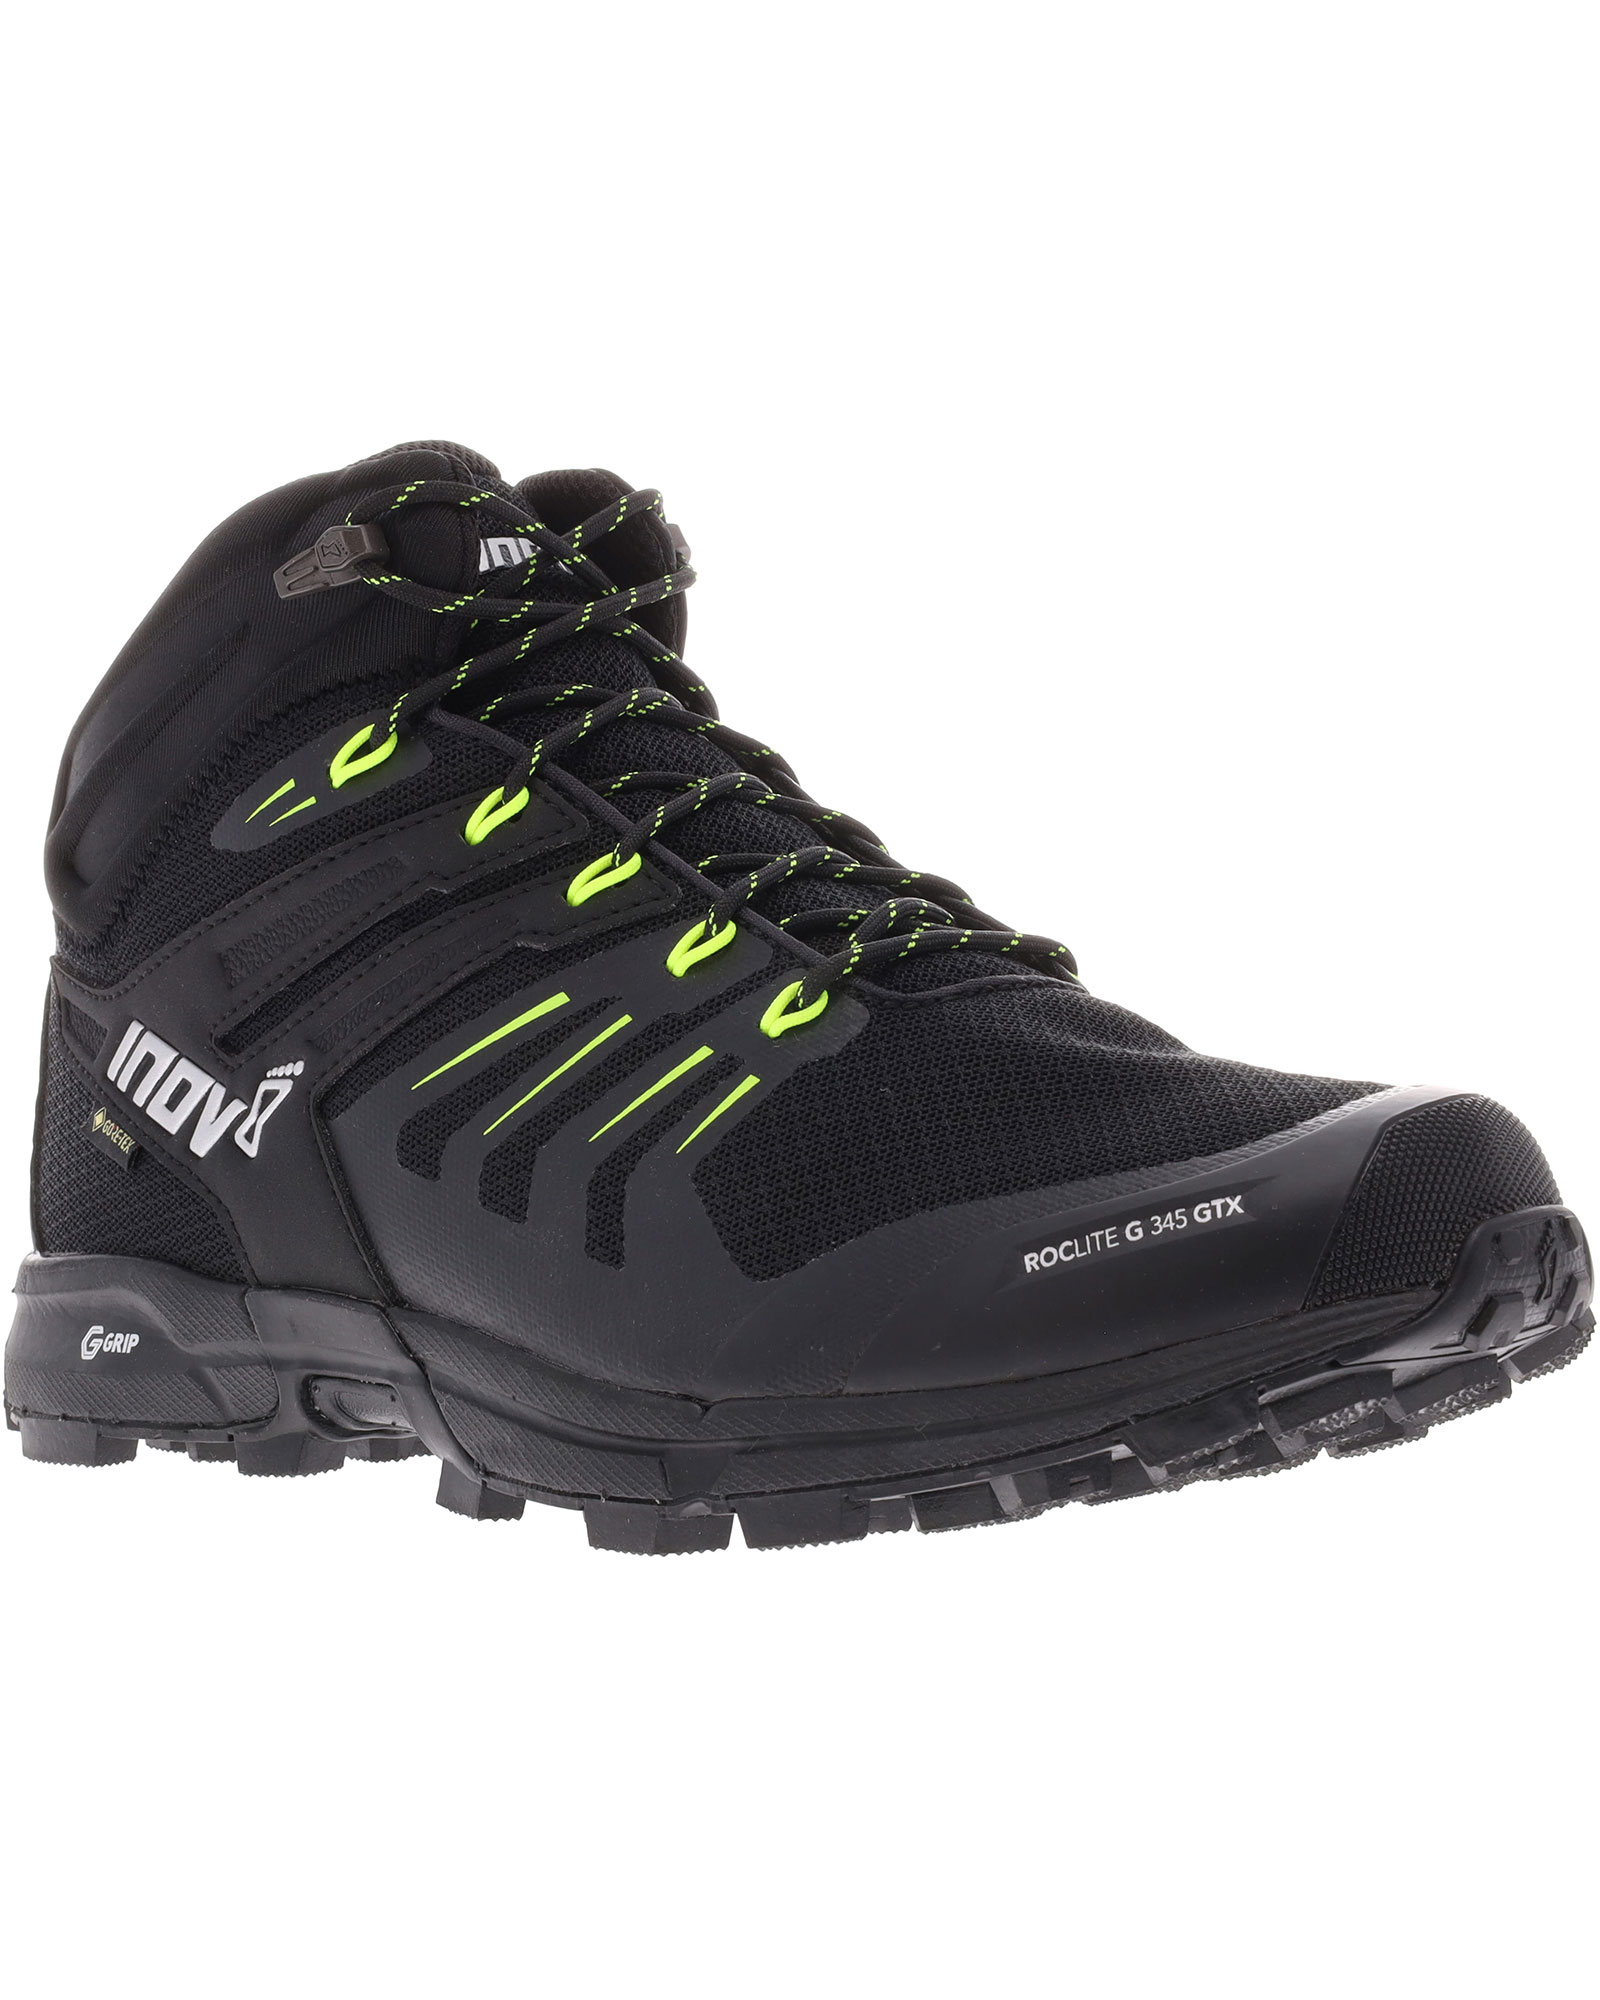 Inov 8 Roclite G 345 V2 GORE TEX Men’s Boots - Black/Lime UK 8.5